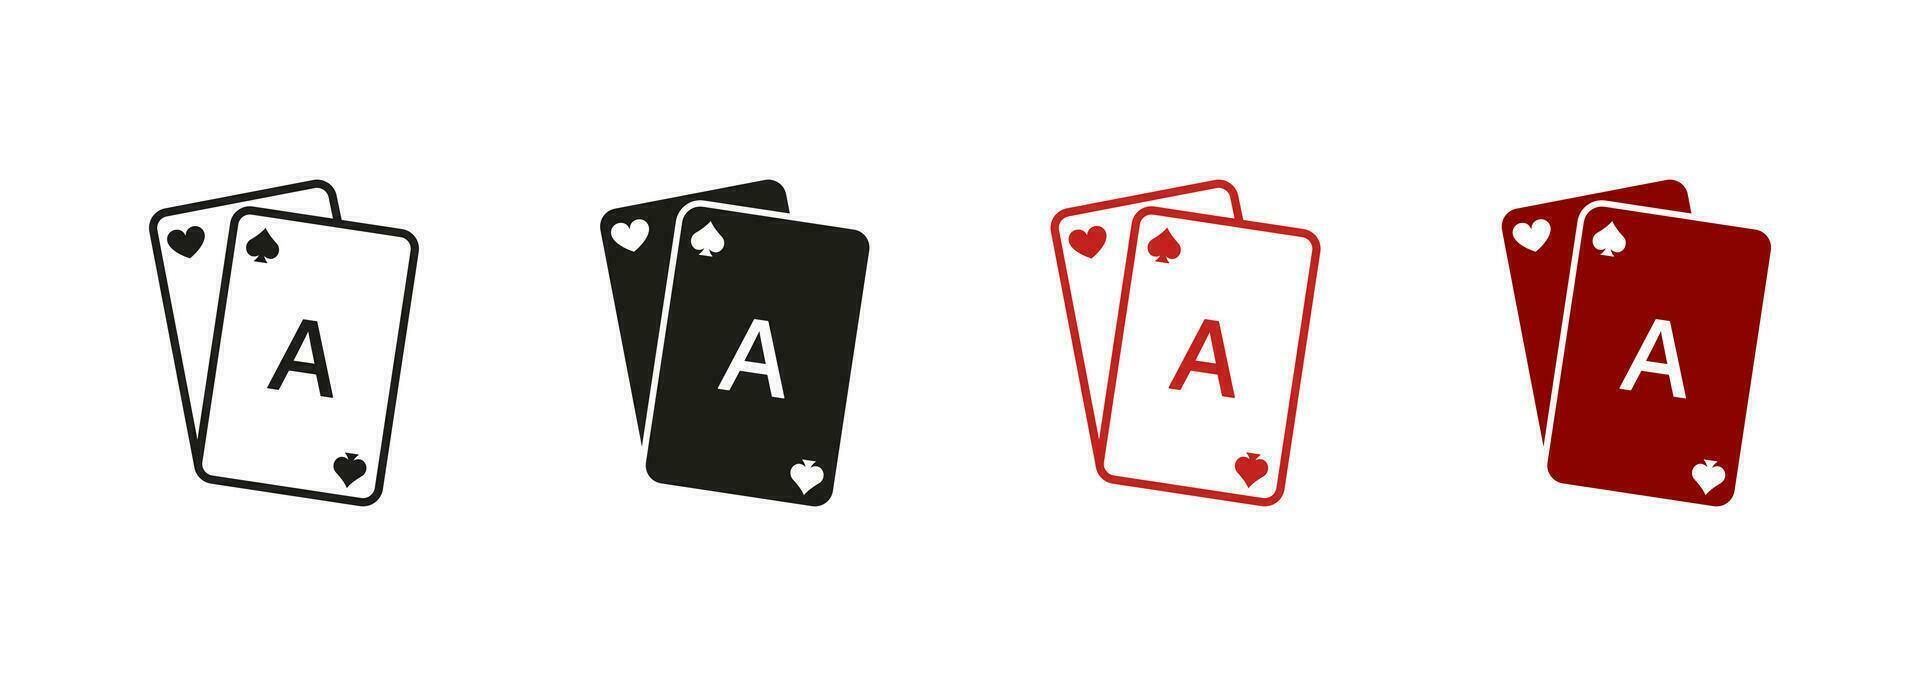 jugando puente, negro Jacobo, real póker pictograma. juego tarjeta cubierta línea y silueta icono colocar. juego adiccion signo. jugar tarjeta símbolo recopilación. aislado vector ilustración.